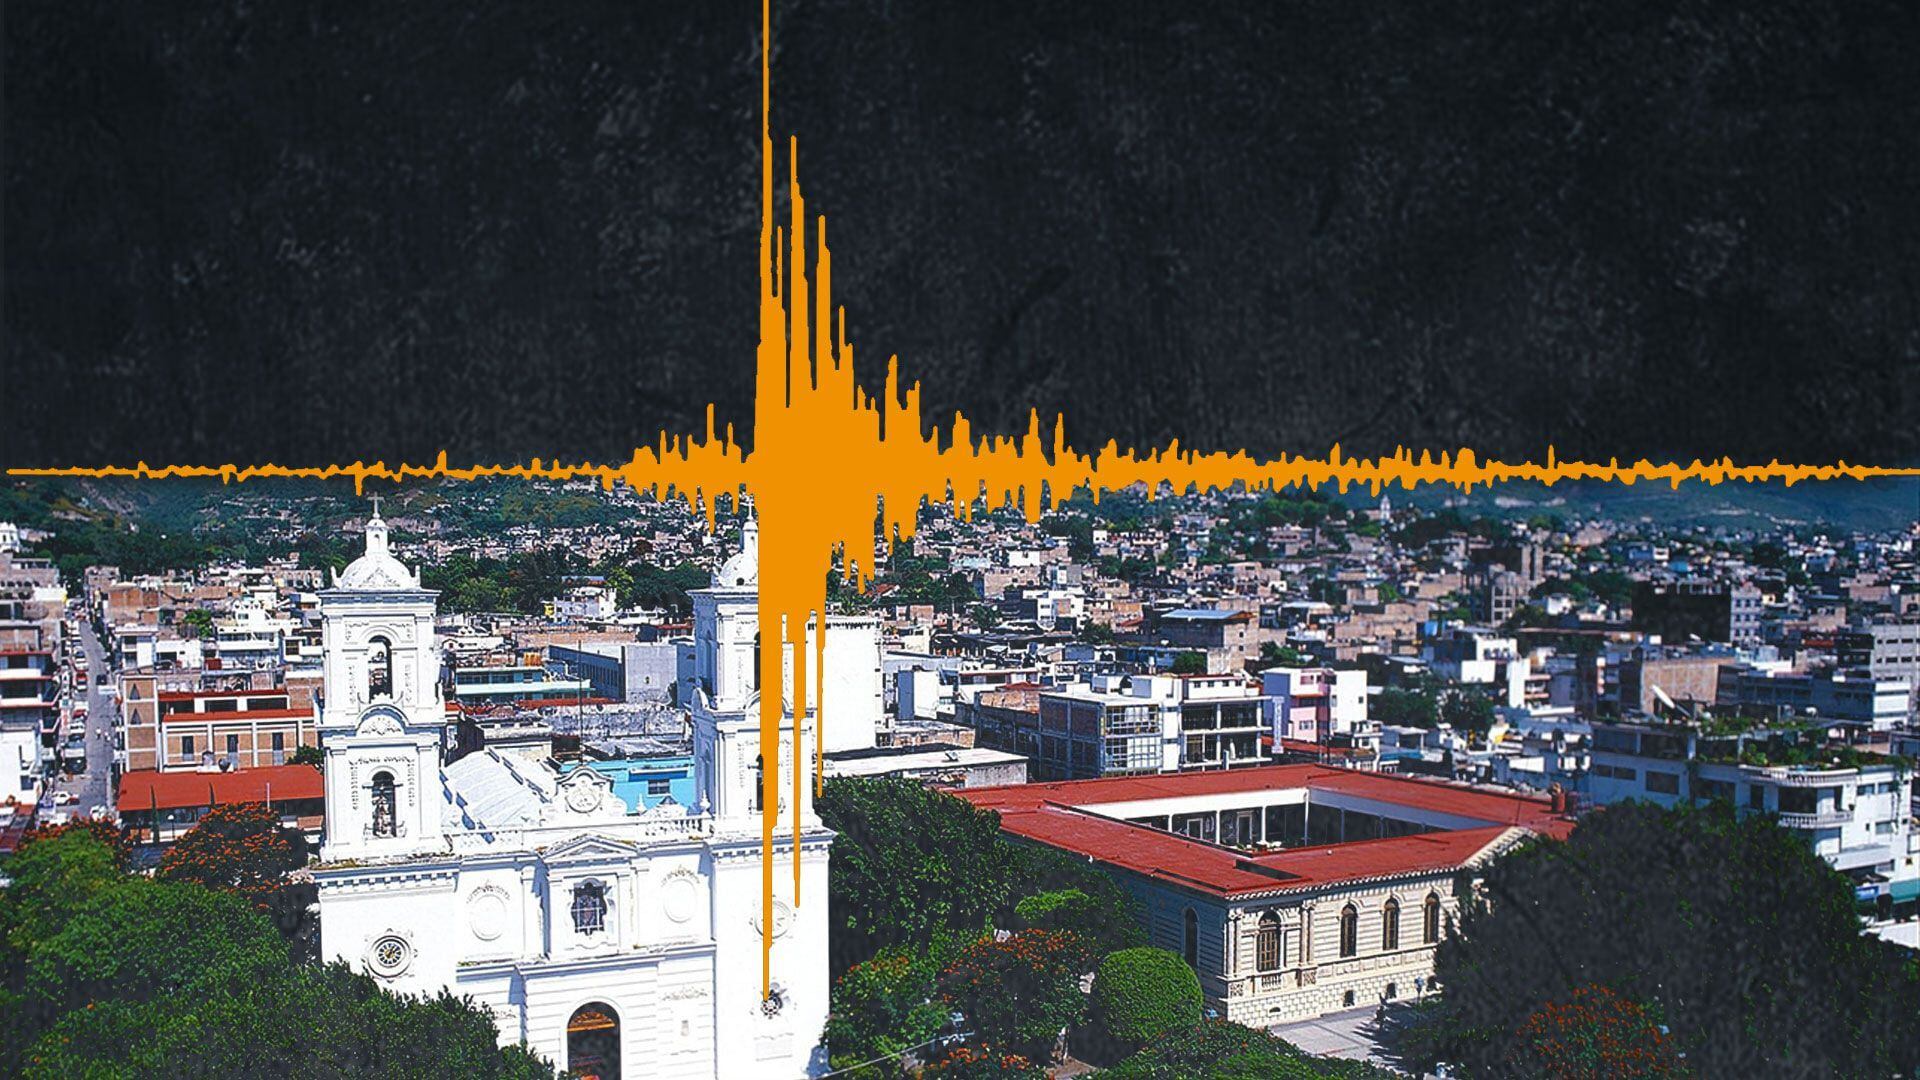 La información preliminar señala que el sismo tuvo epicentro en Guerrero Negro. (Infobae)